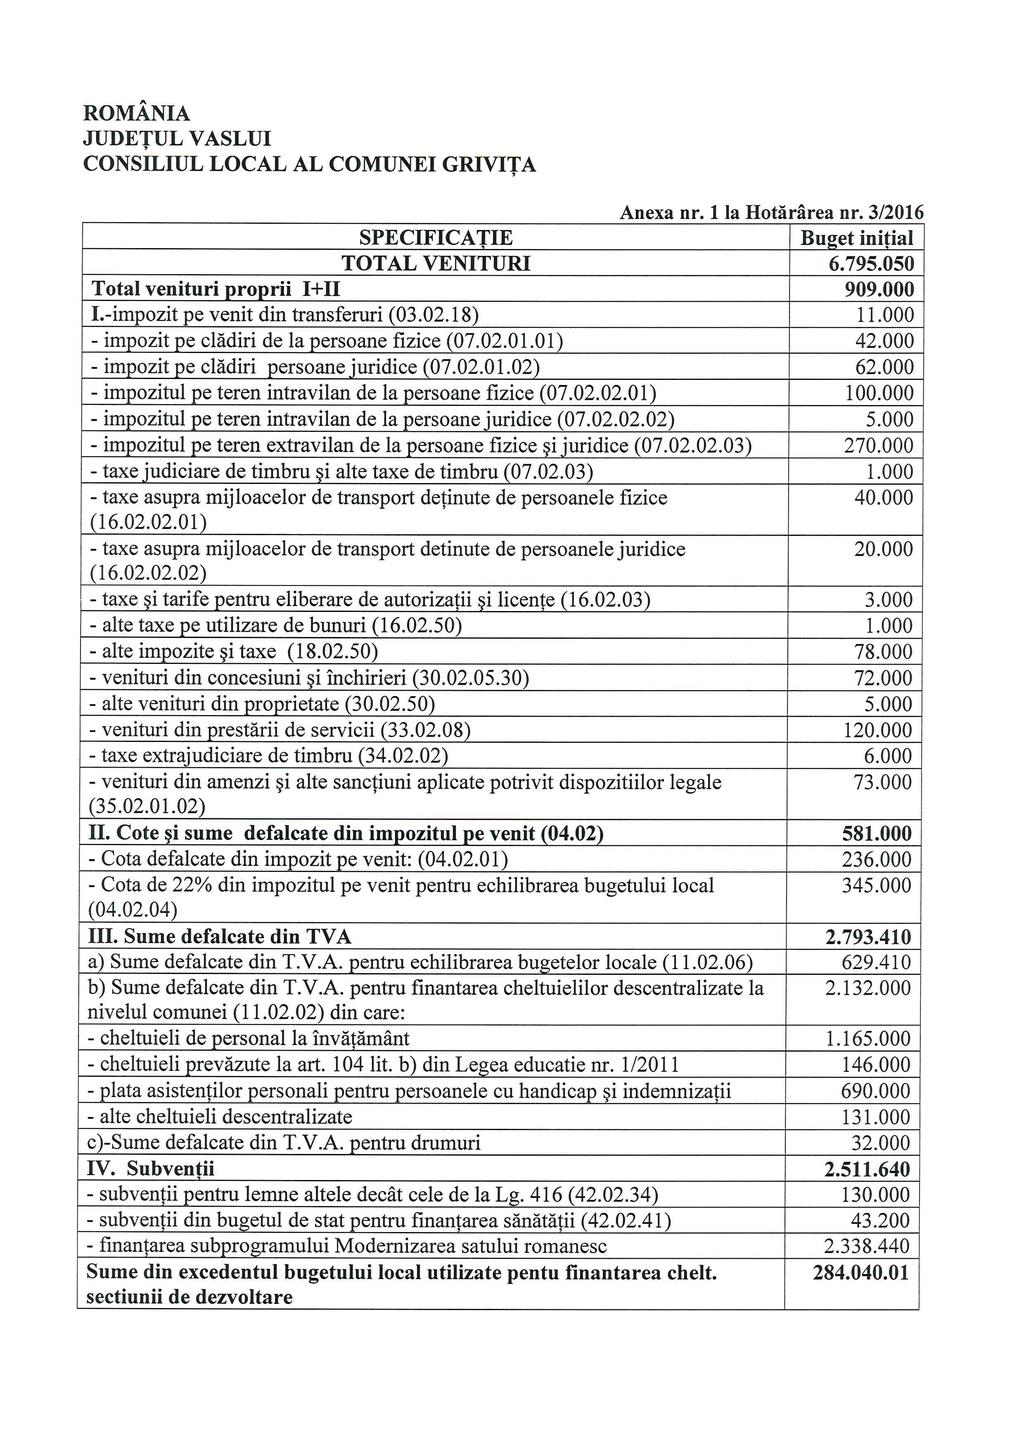 CONSILIUL LOCAL AL COMUNEI GRIVIŢA Anexa nr. 1 la Hotărârea nr. 3/2016 SPECIFICAŢIE Buget iniţial TOTAL VENITURI 6.795.050 Total venituri proprii I+II 909.000 I.-impozit pe venit din transferuri (03.